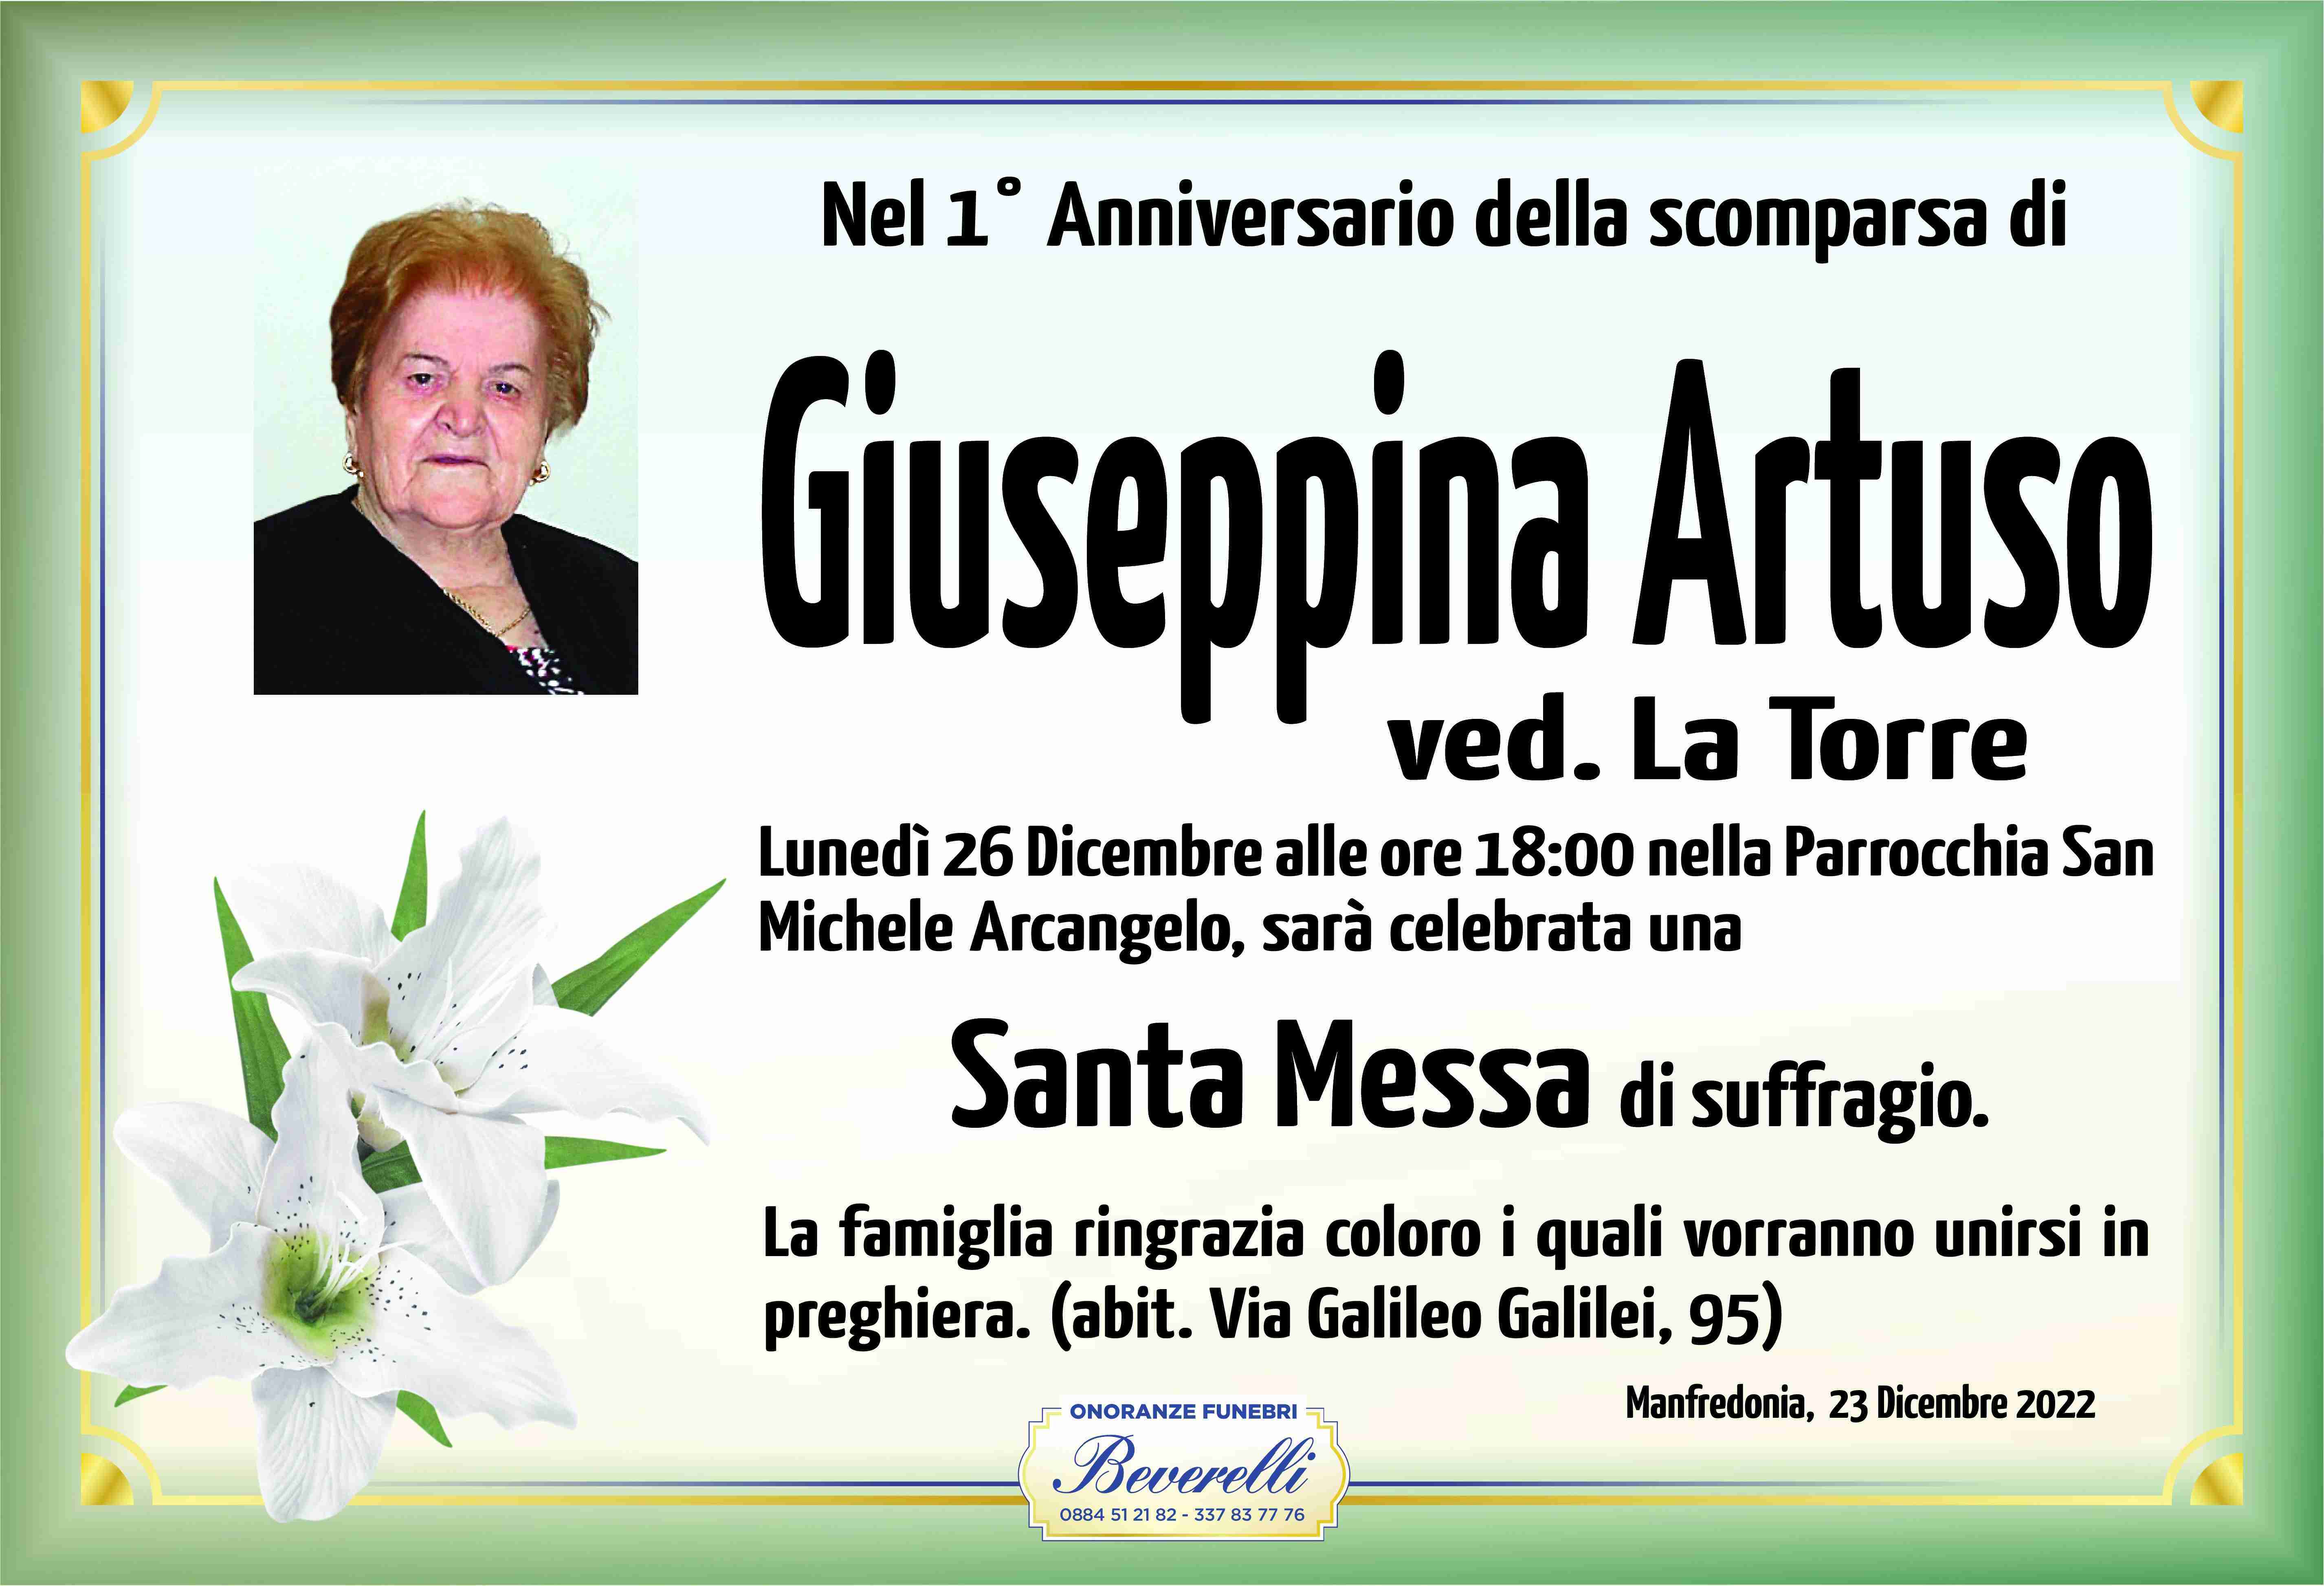 Giuseppina Artuso